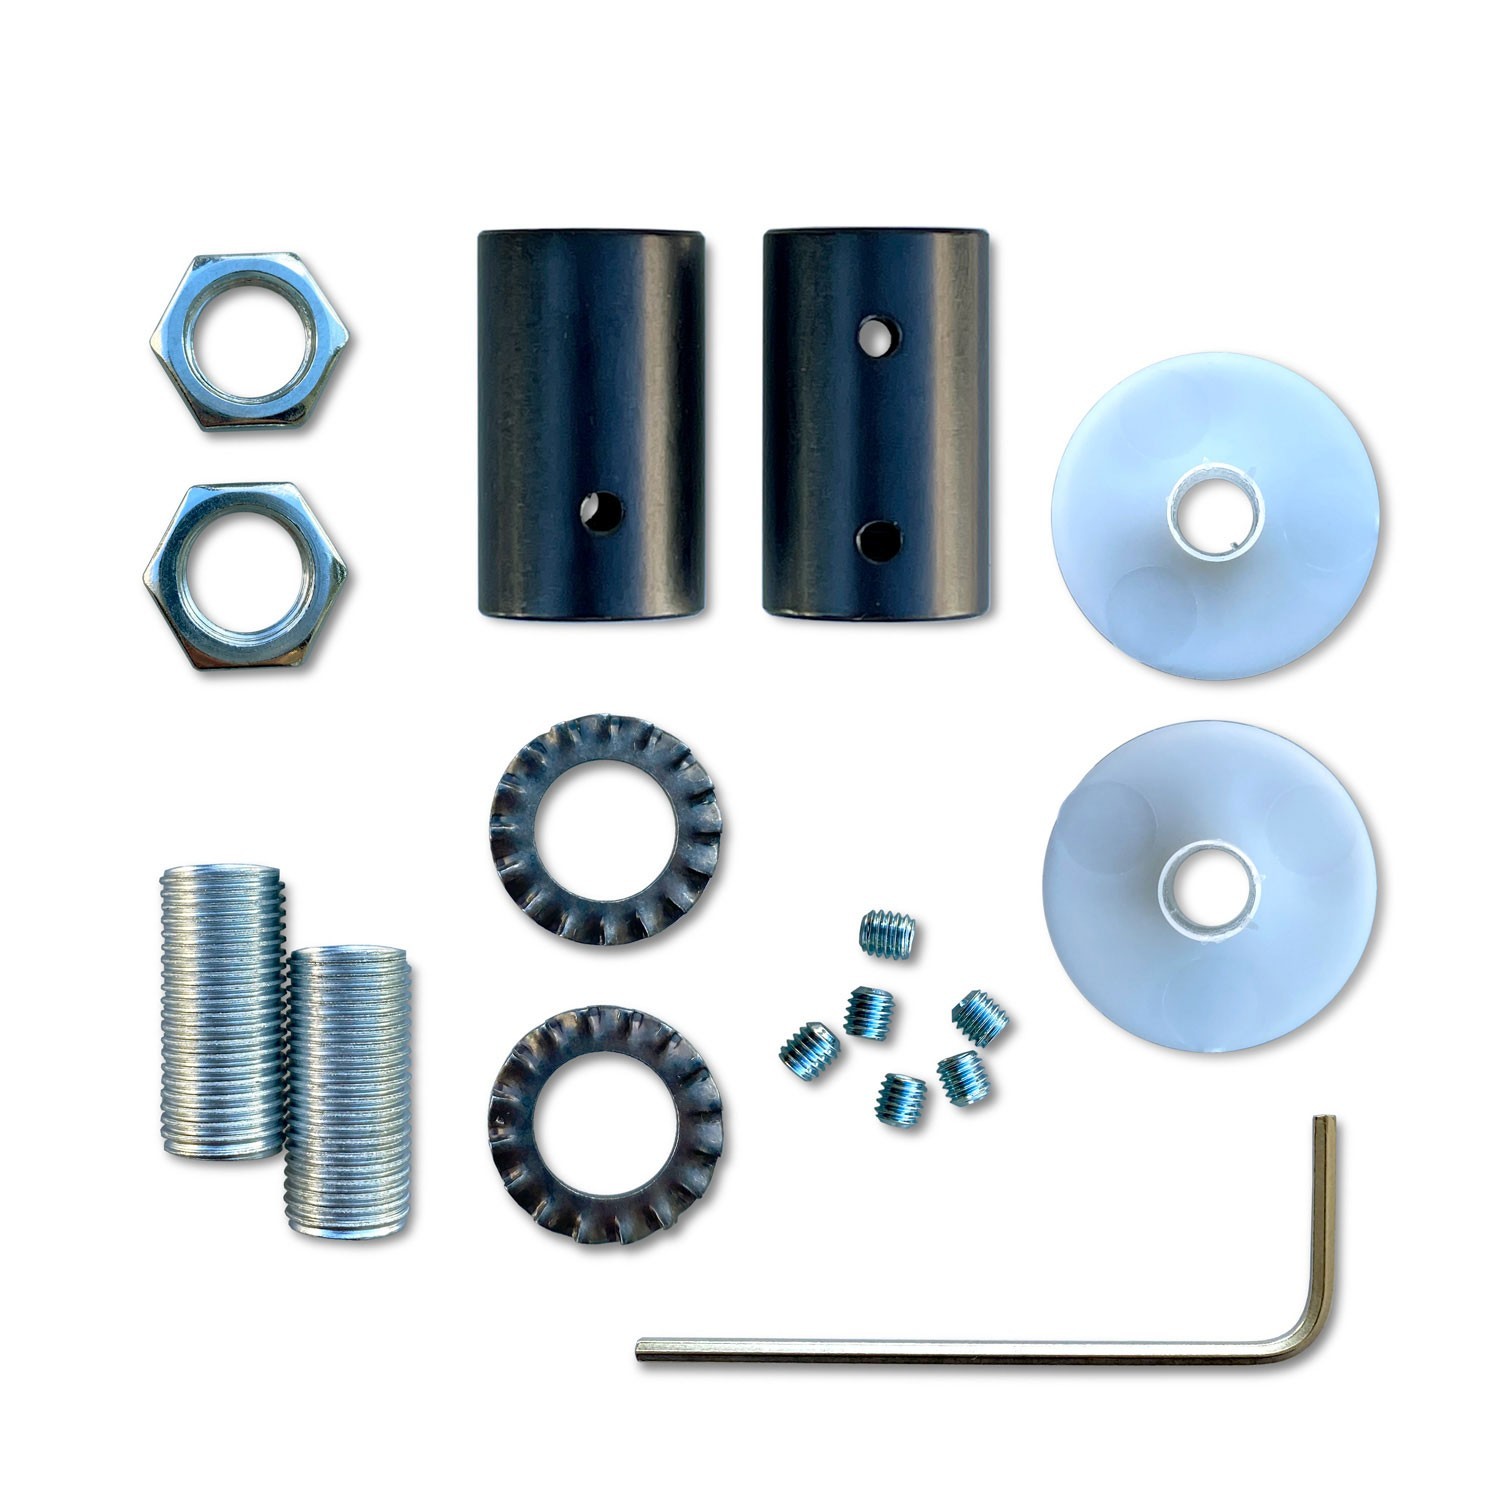 Kit Creative Flex flexibel rörledning täckt med RM78 himmelsblått tyg med terminaler i metall